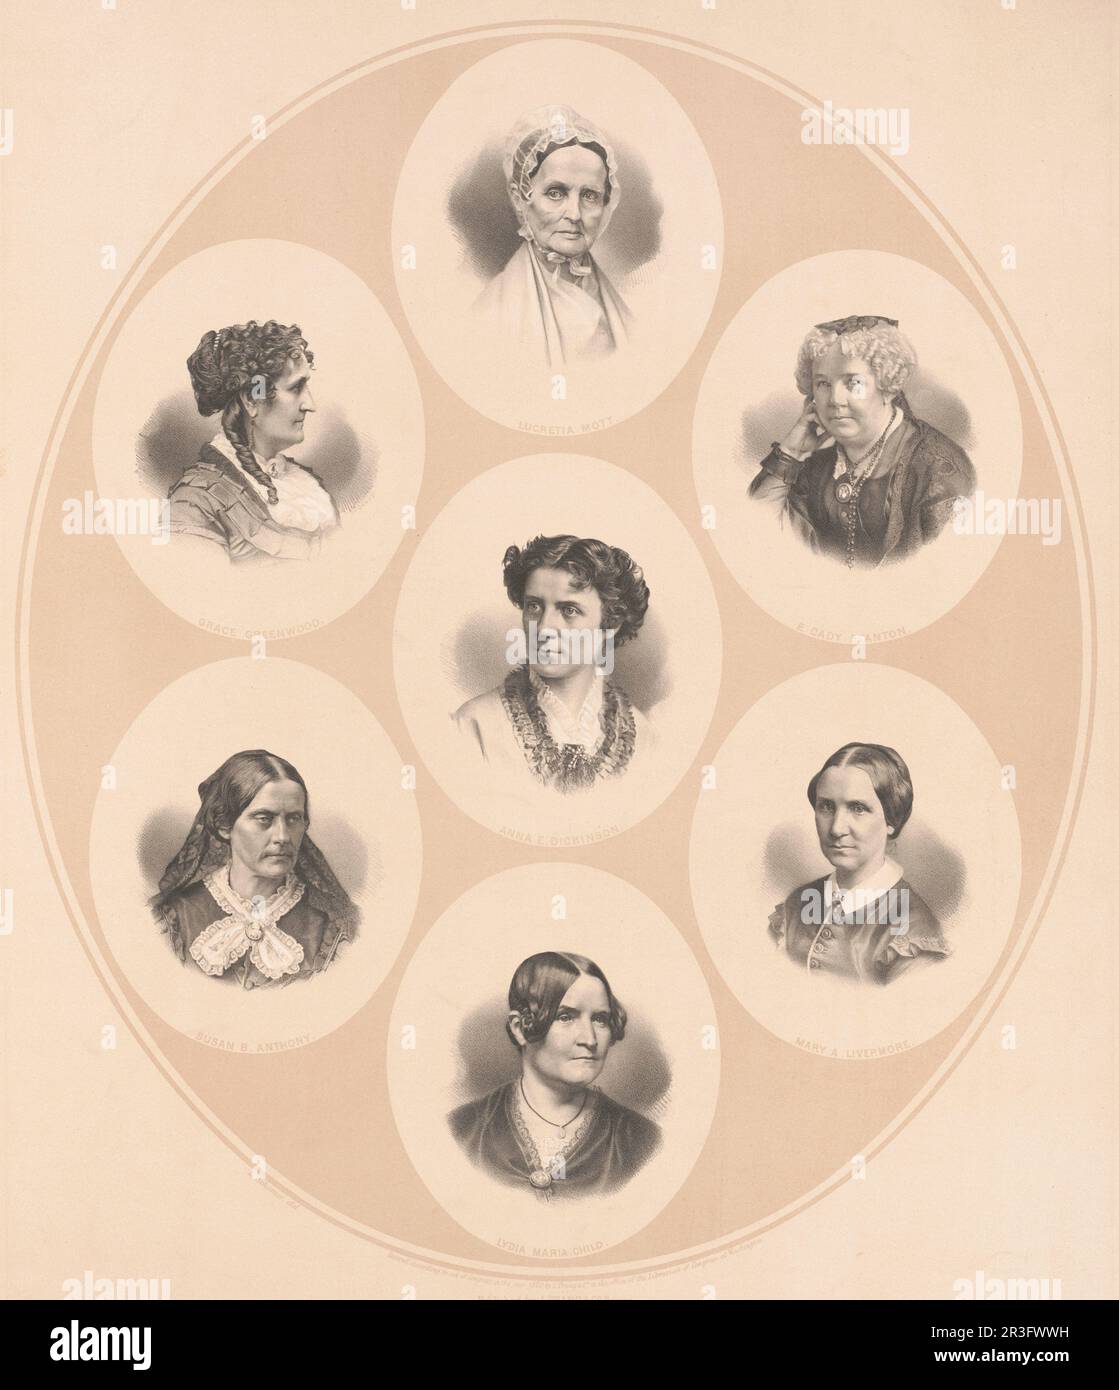 Ritratti della testa e delle spalle di figure prominenti del movimento per i diritti delle donne e del suffragio. Foto Stock